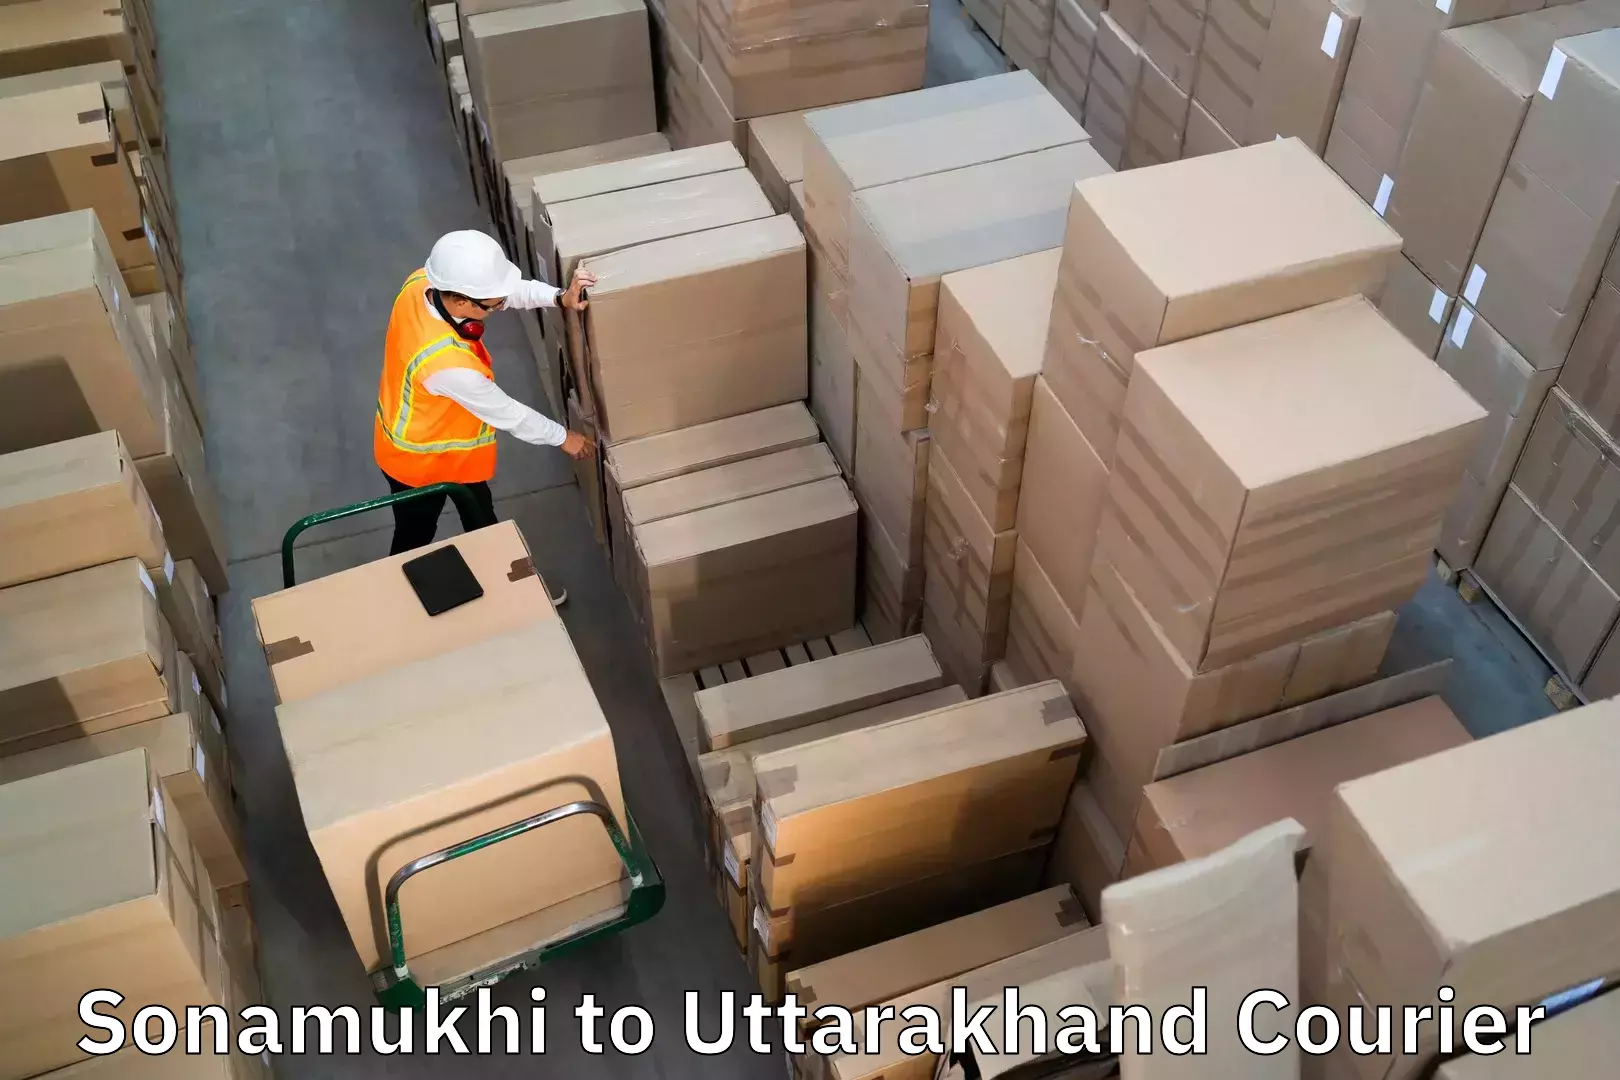 Luggage delivery estimate in Sonamukhi to Uttarkashi